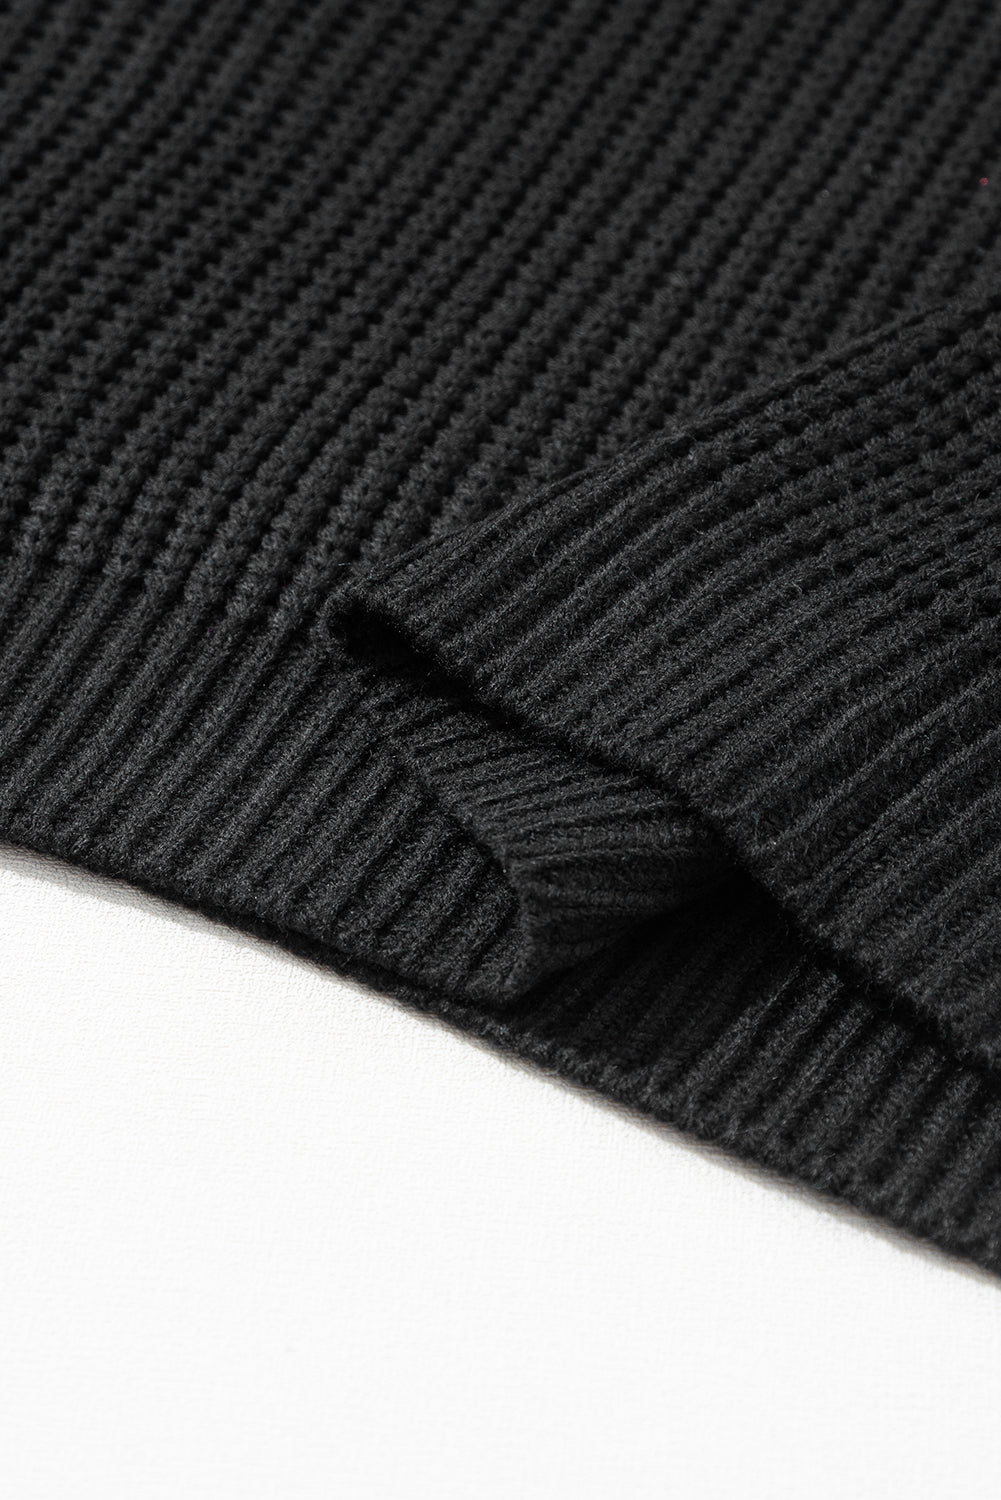 Crni pleteni pulover s rukavima i spuštenim ramenima